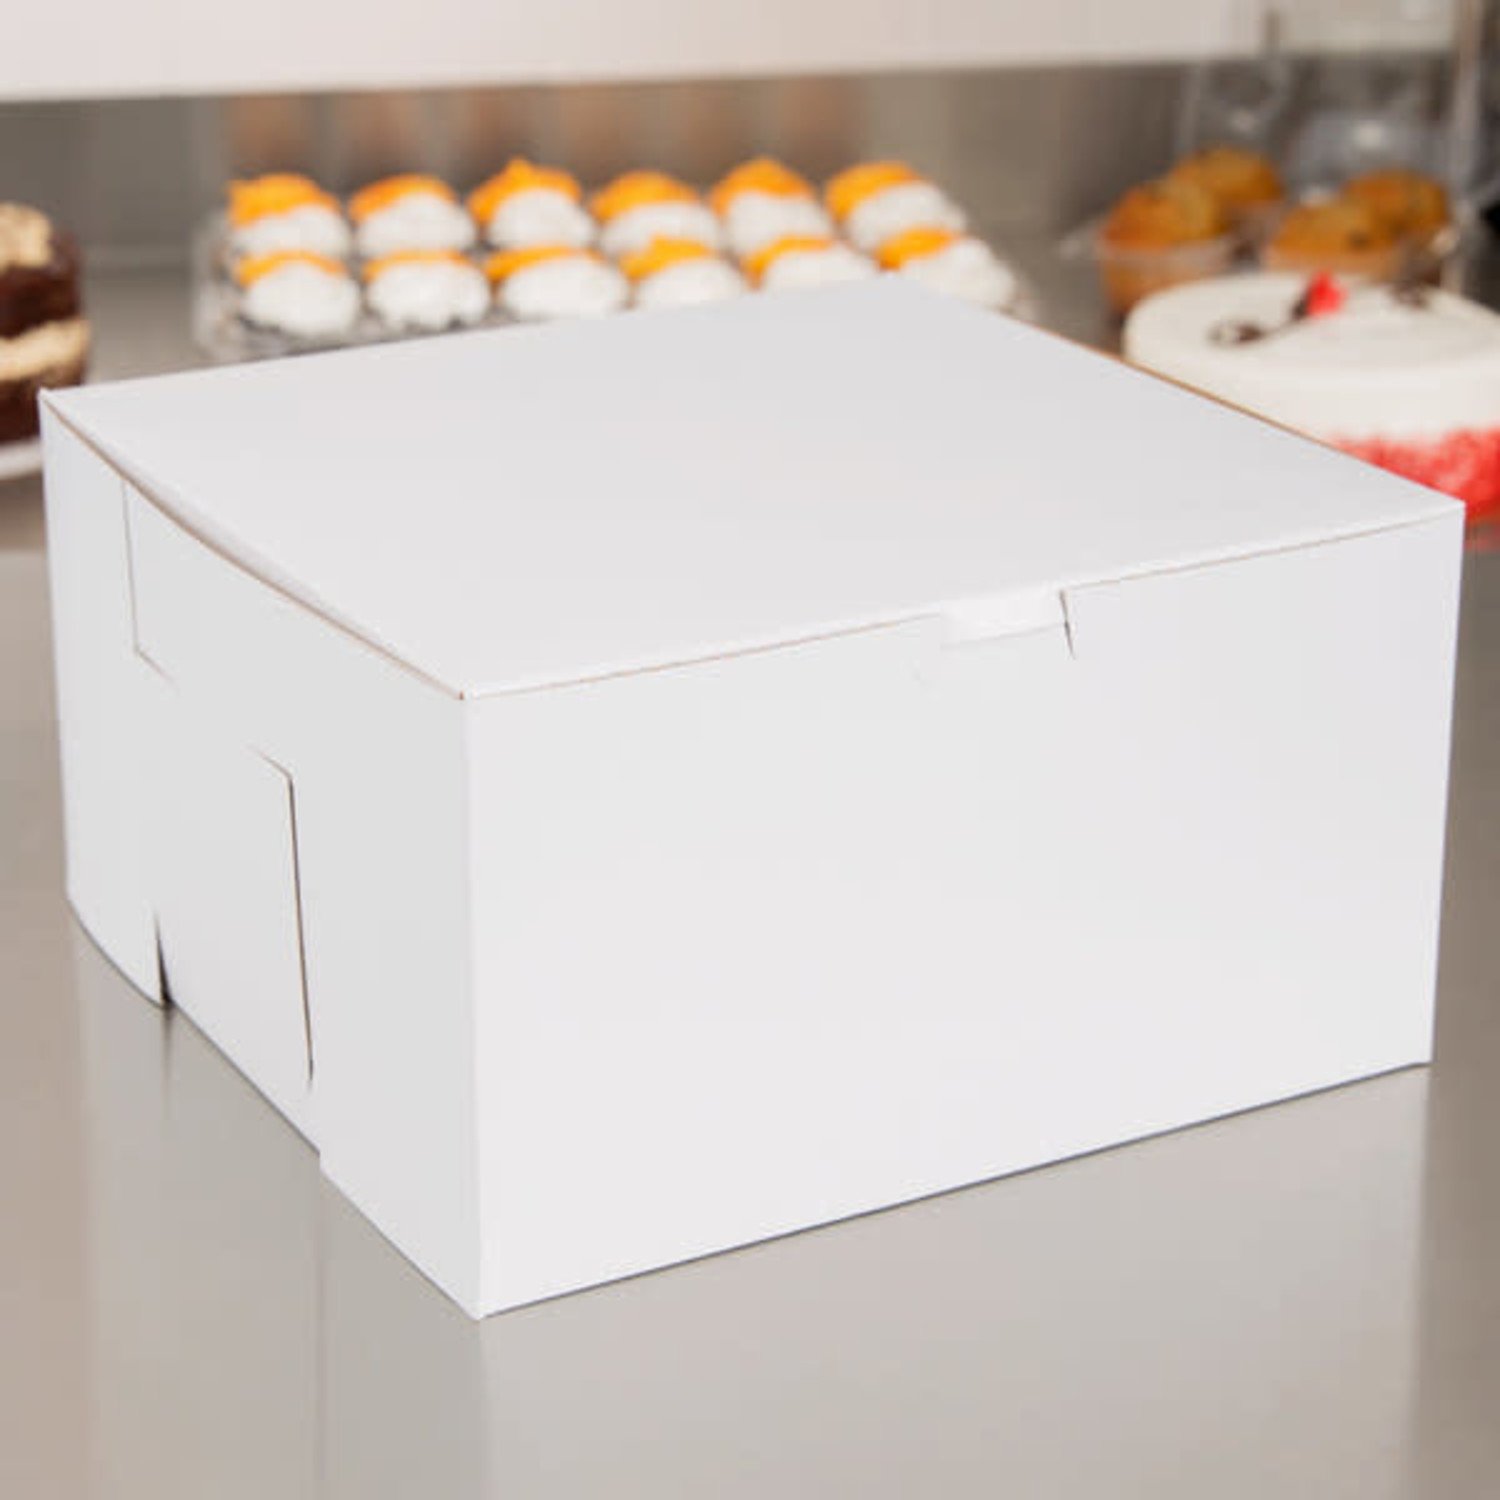 Cake S.O.S. Buy 12x12x6 White Cake Box, Pack of 50 Online India | Ubuy